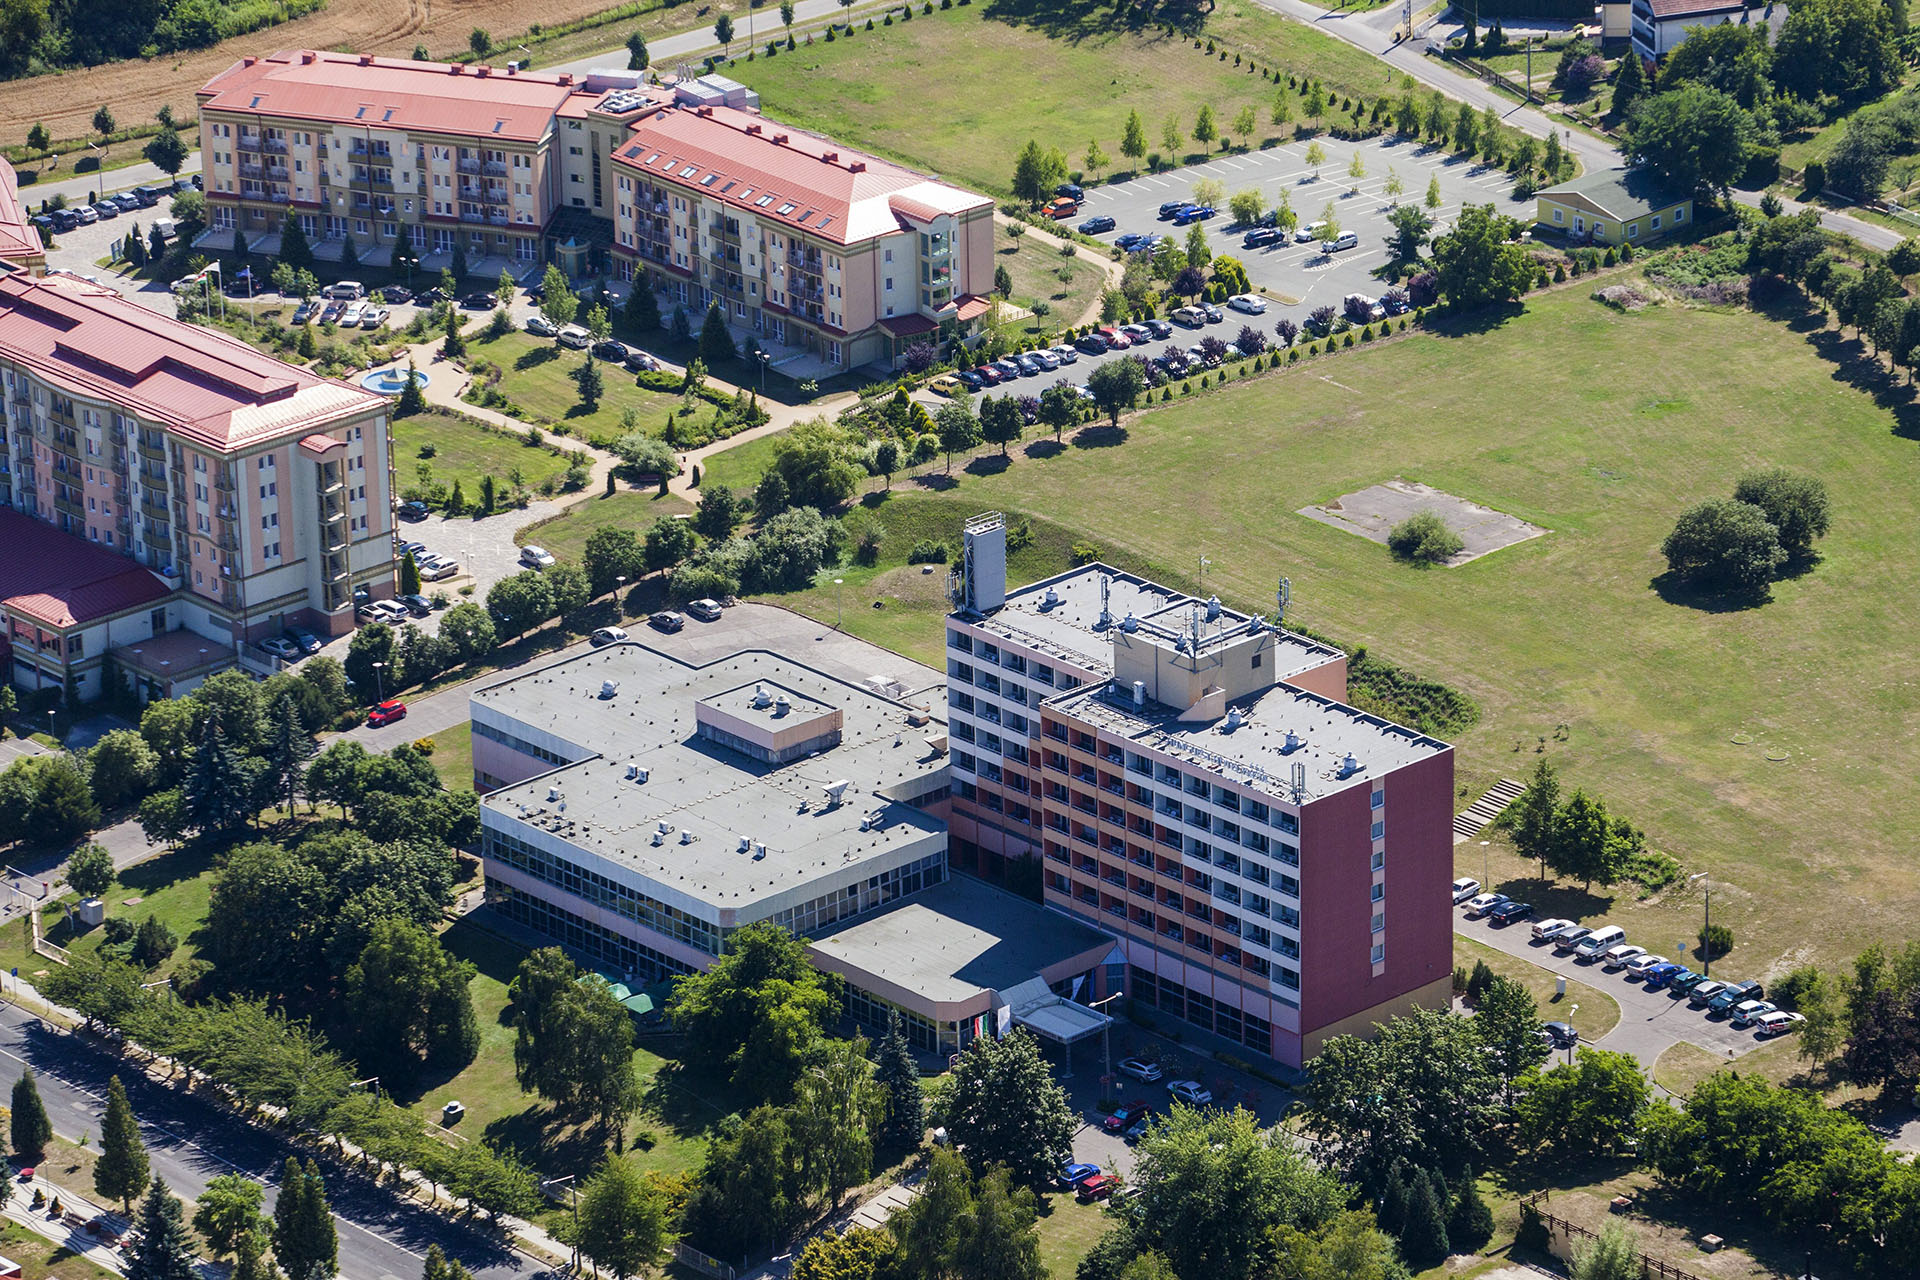 Nyitnak Mészáros Lőrinc szállodái, az egészségügyi dolgozók kedvezményt kapnak